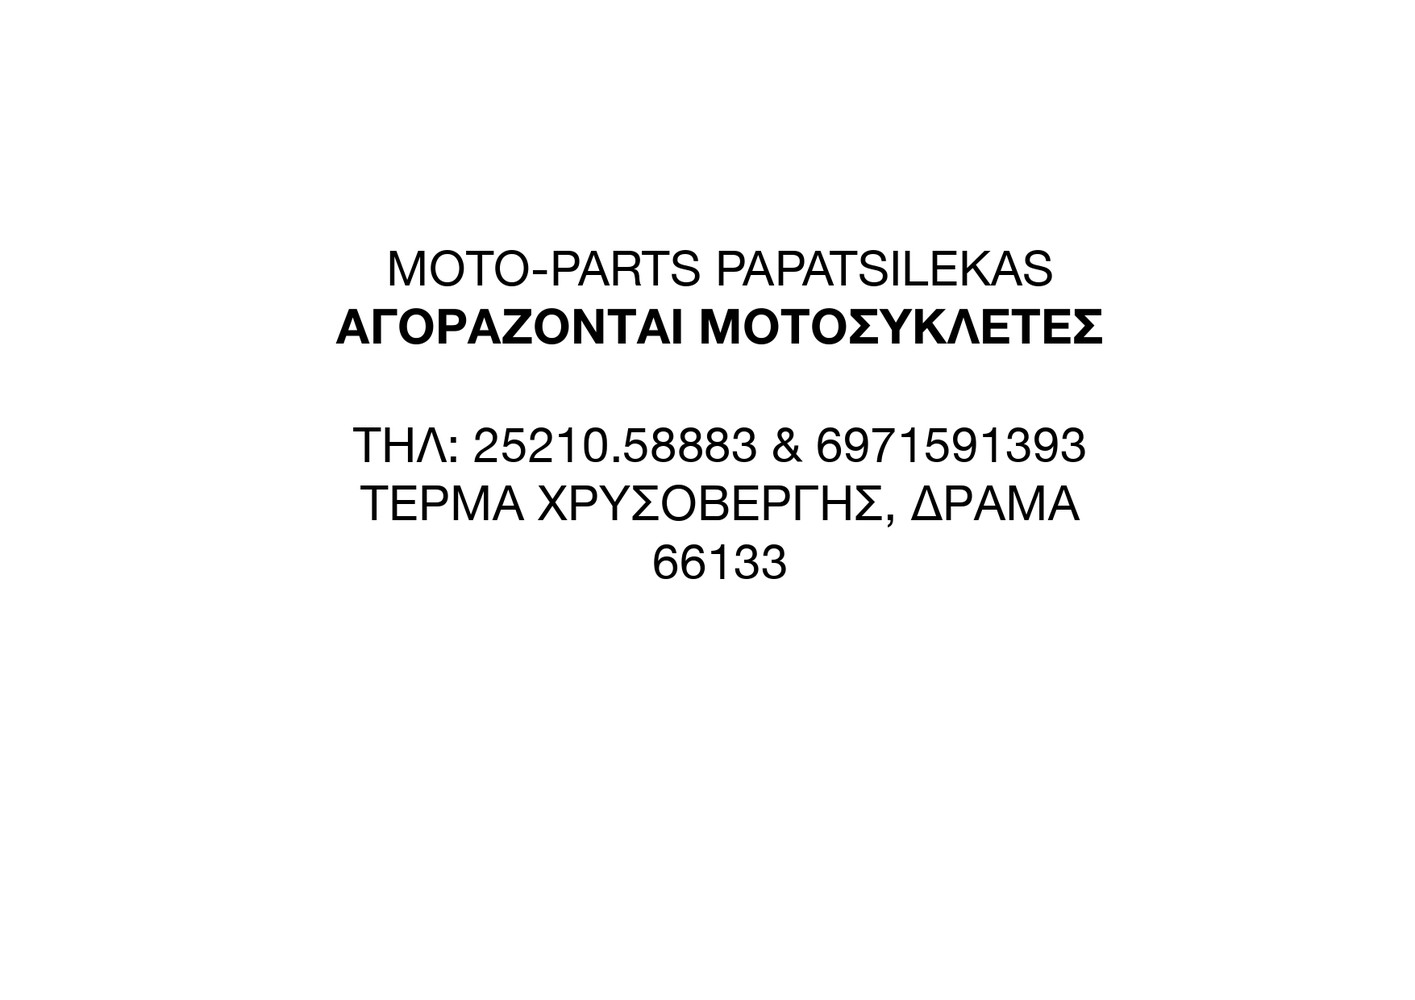 ΜΟΧΛΙΚΟ ΨΑΛΙΔΙΟΥ YAMAHA WR 200 3XP MOTO PAPATSILEKAS-thumb-4